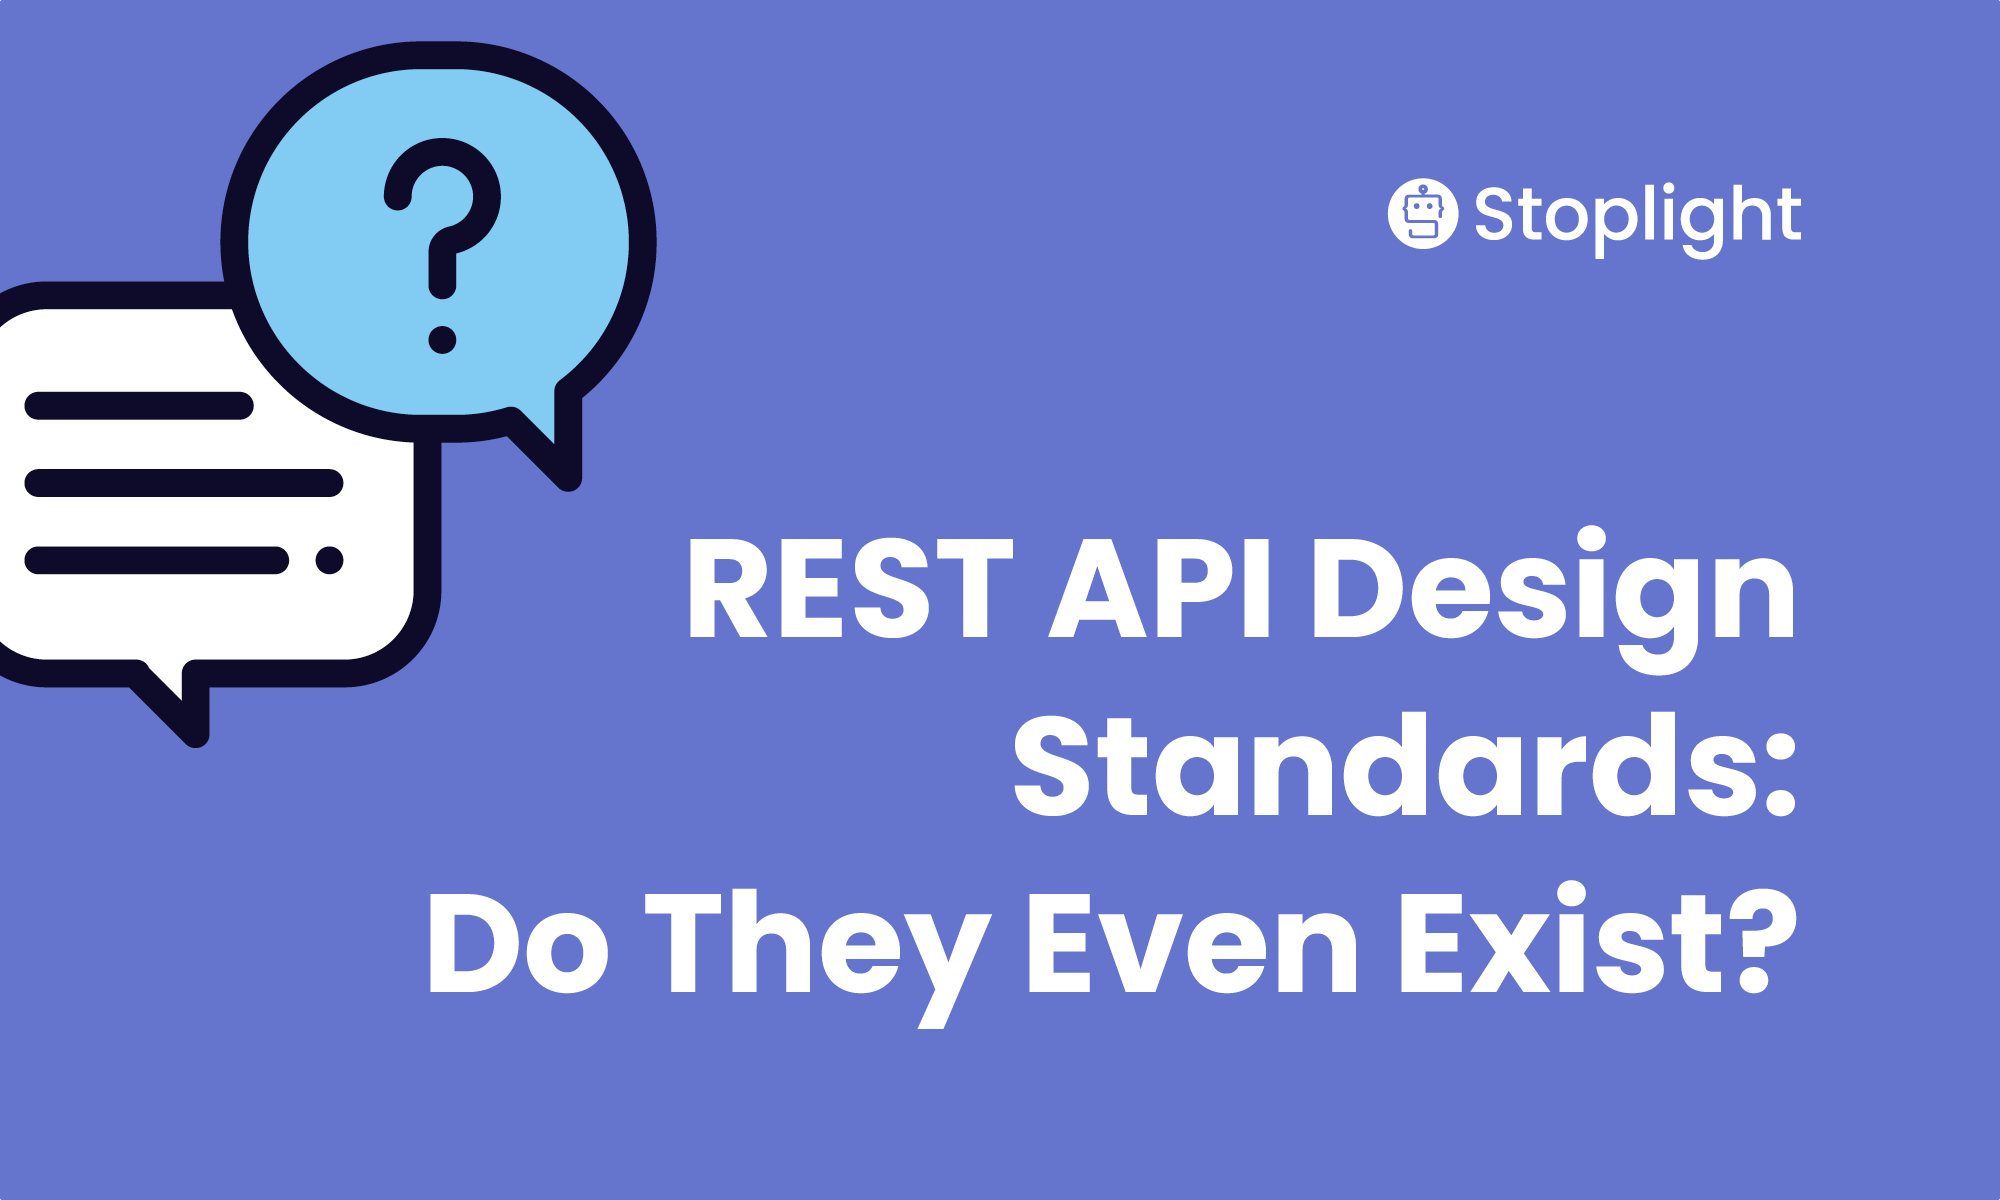 REST API Design Standards: Do They Even Exist?